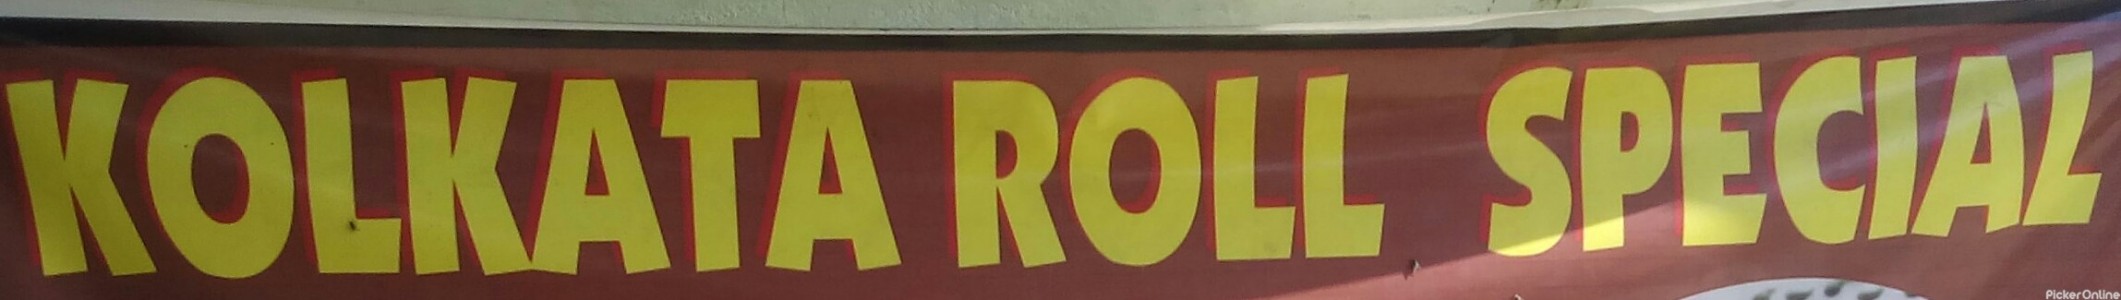 Kolkata Rolls Restaurant